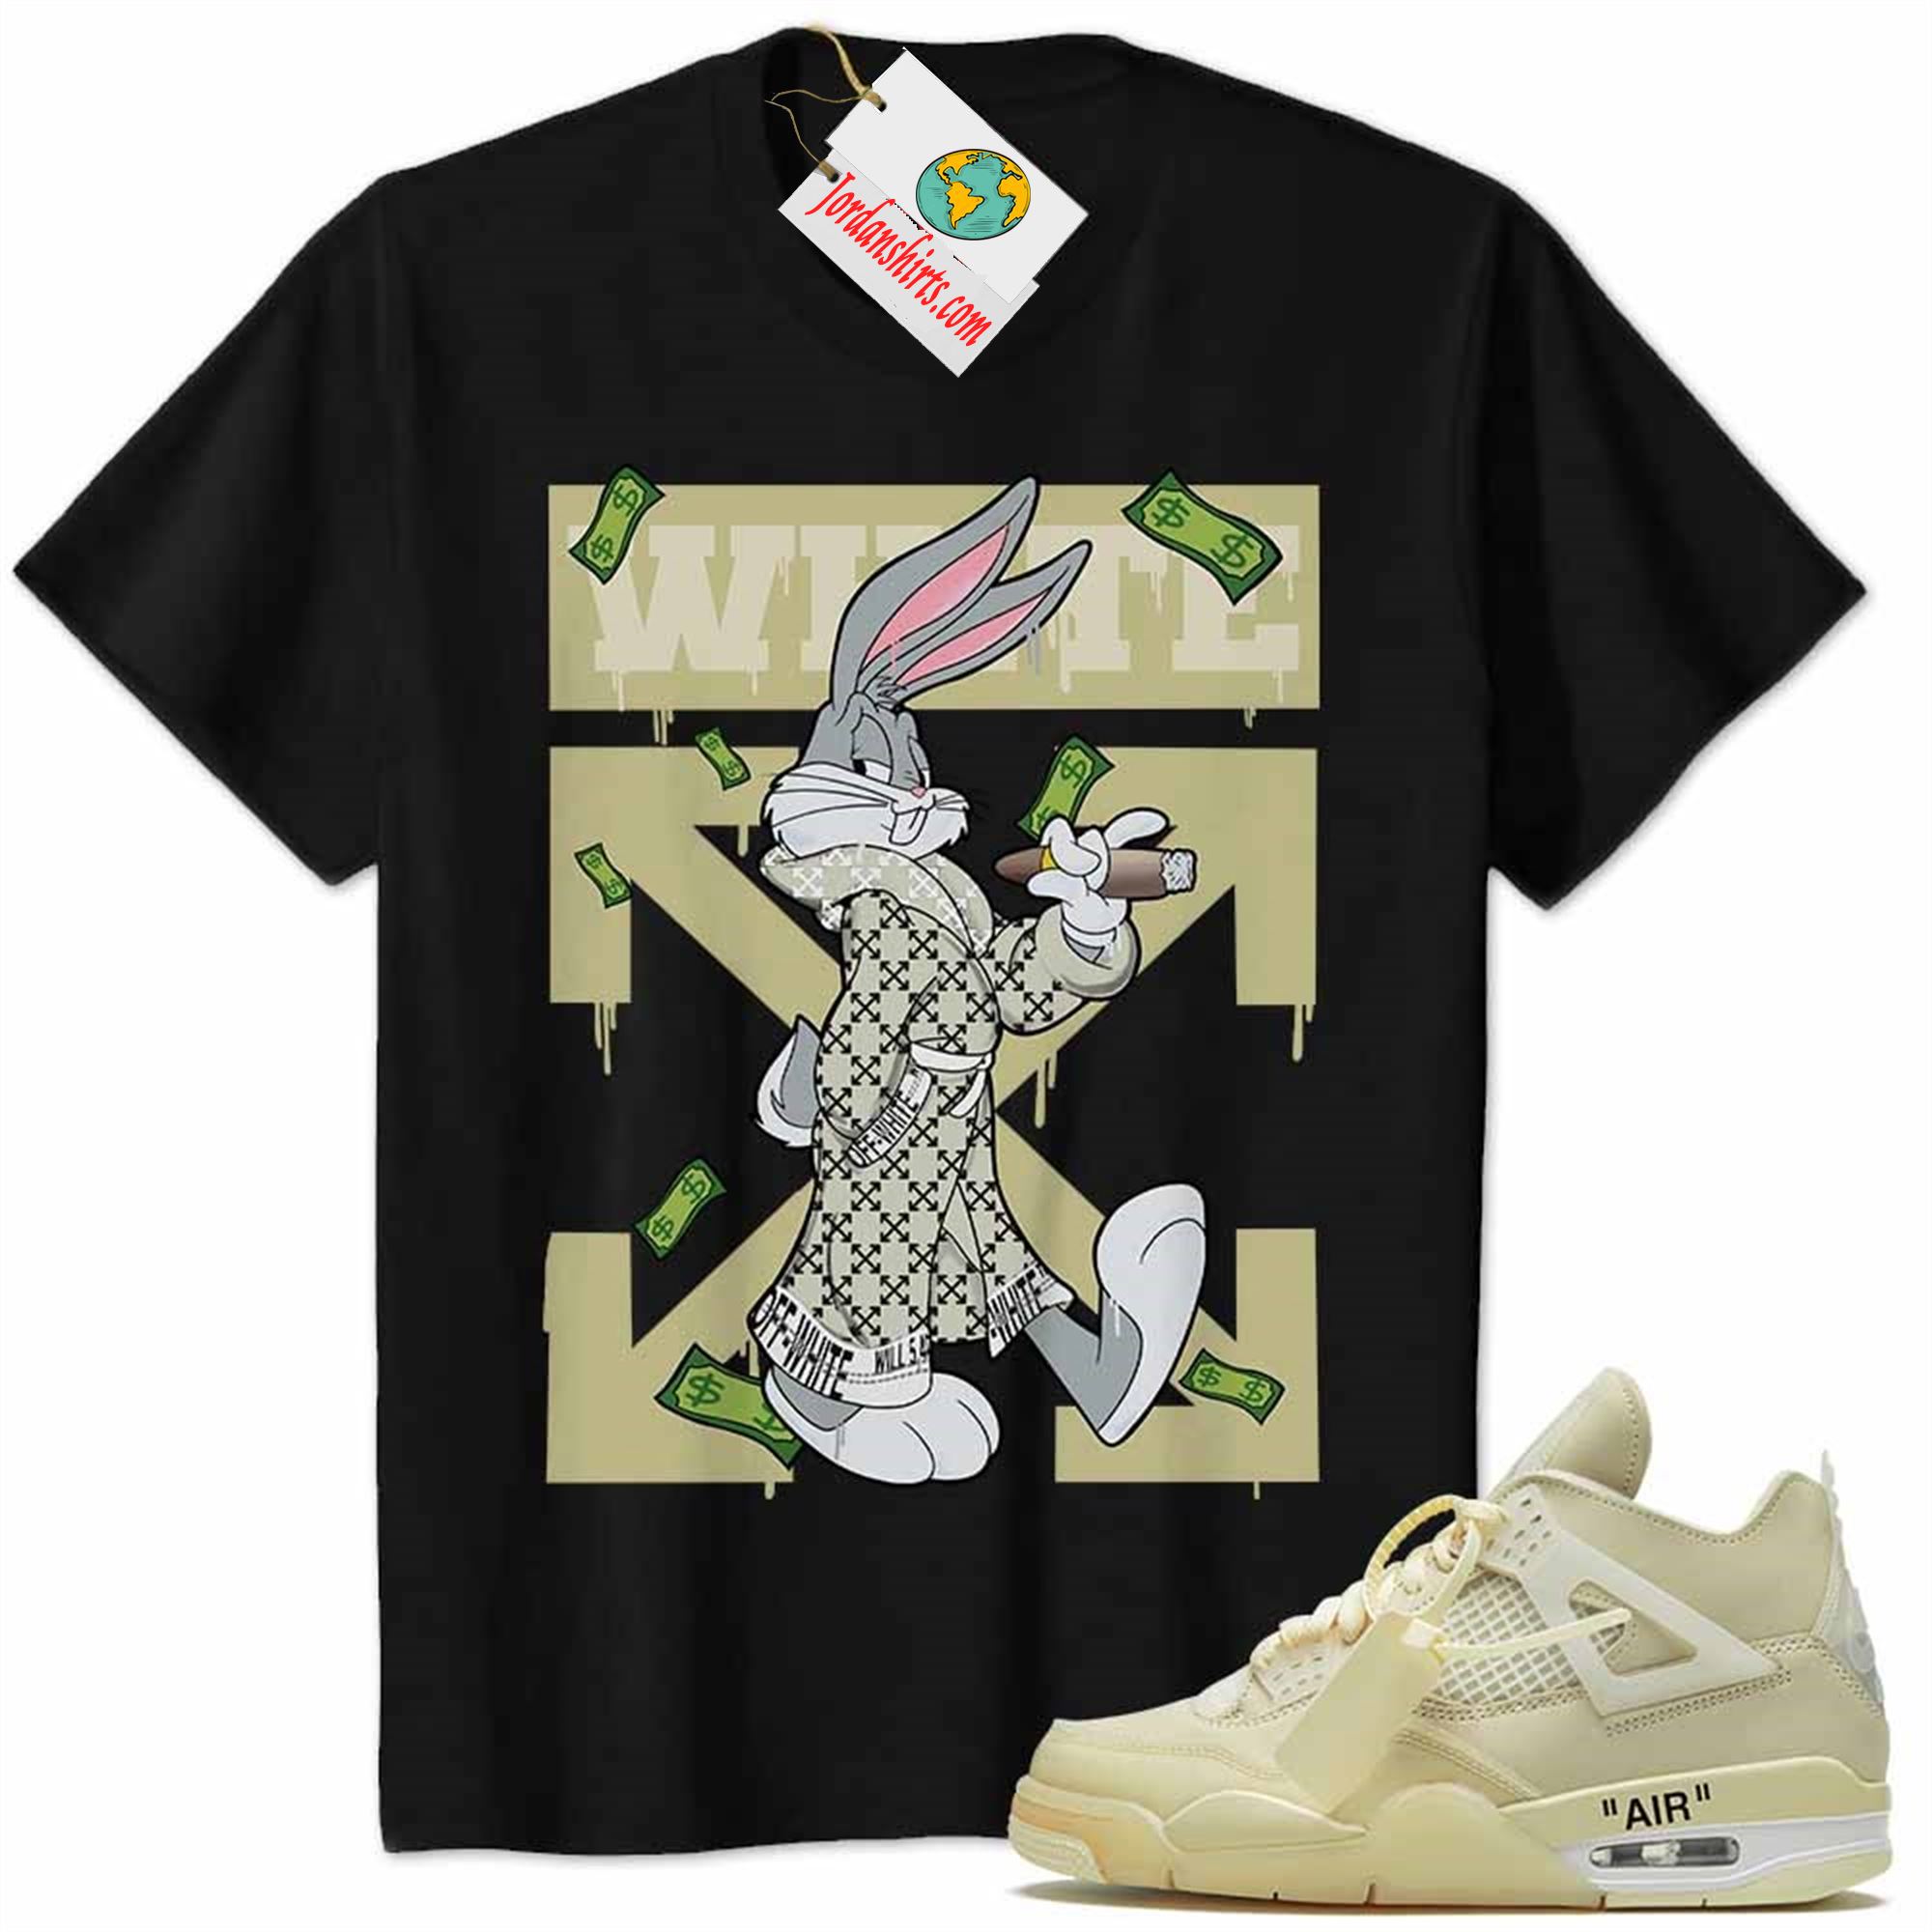 Jordan 4 Shirt, Jordan 4 Off-white Sail Shirt Bug Bunny Smokes Weed Money Falling Black Full Size Up To 5xl